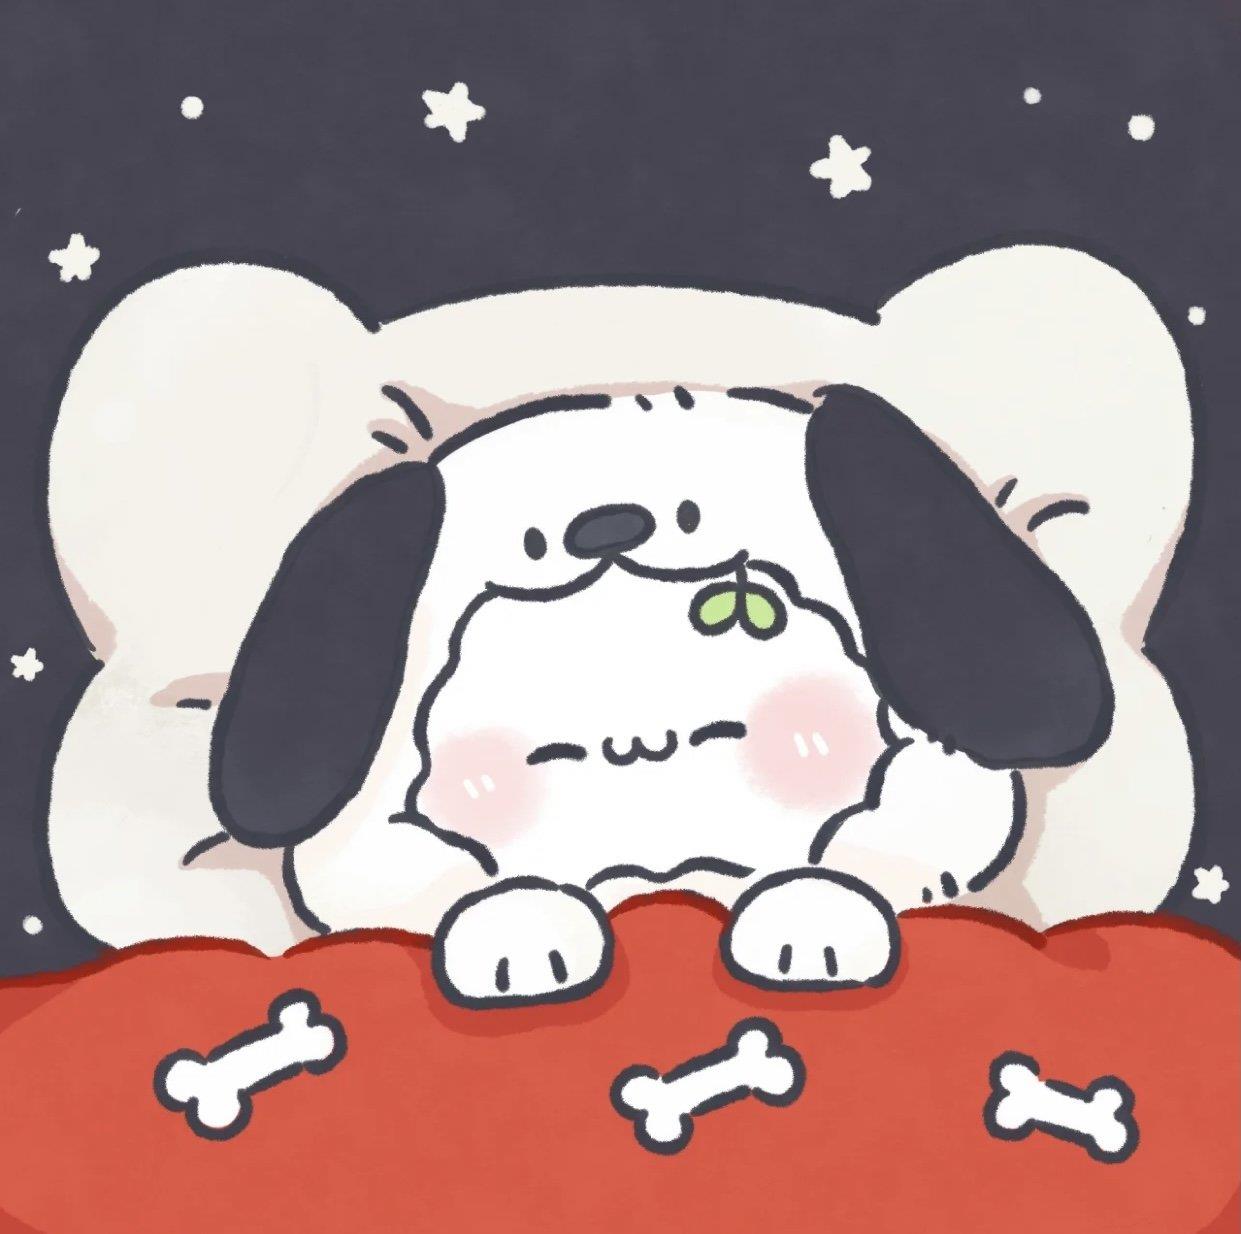 可爱小动物卡通头像 睡觉的小动物卡通头像大全